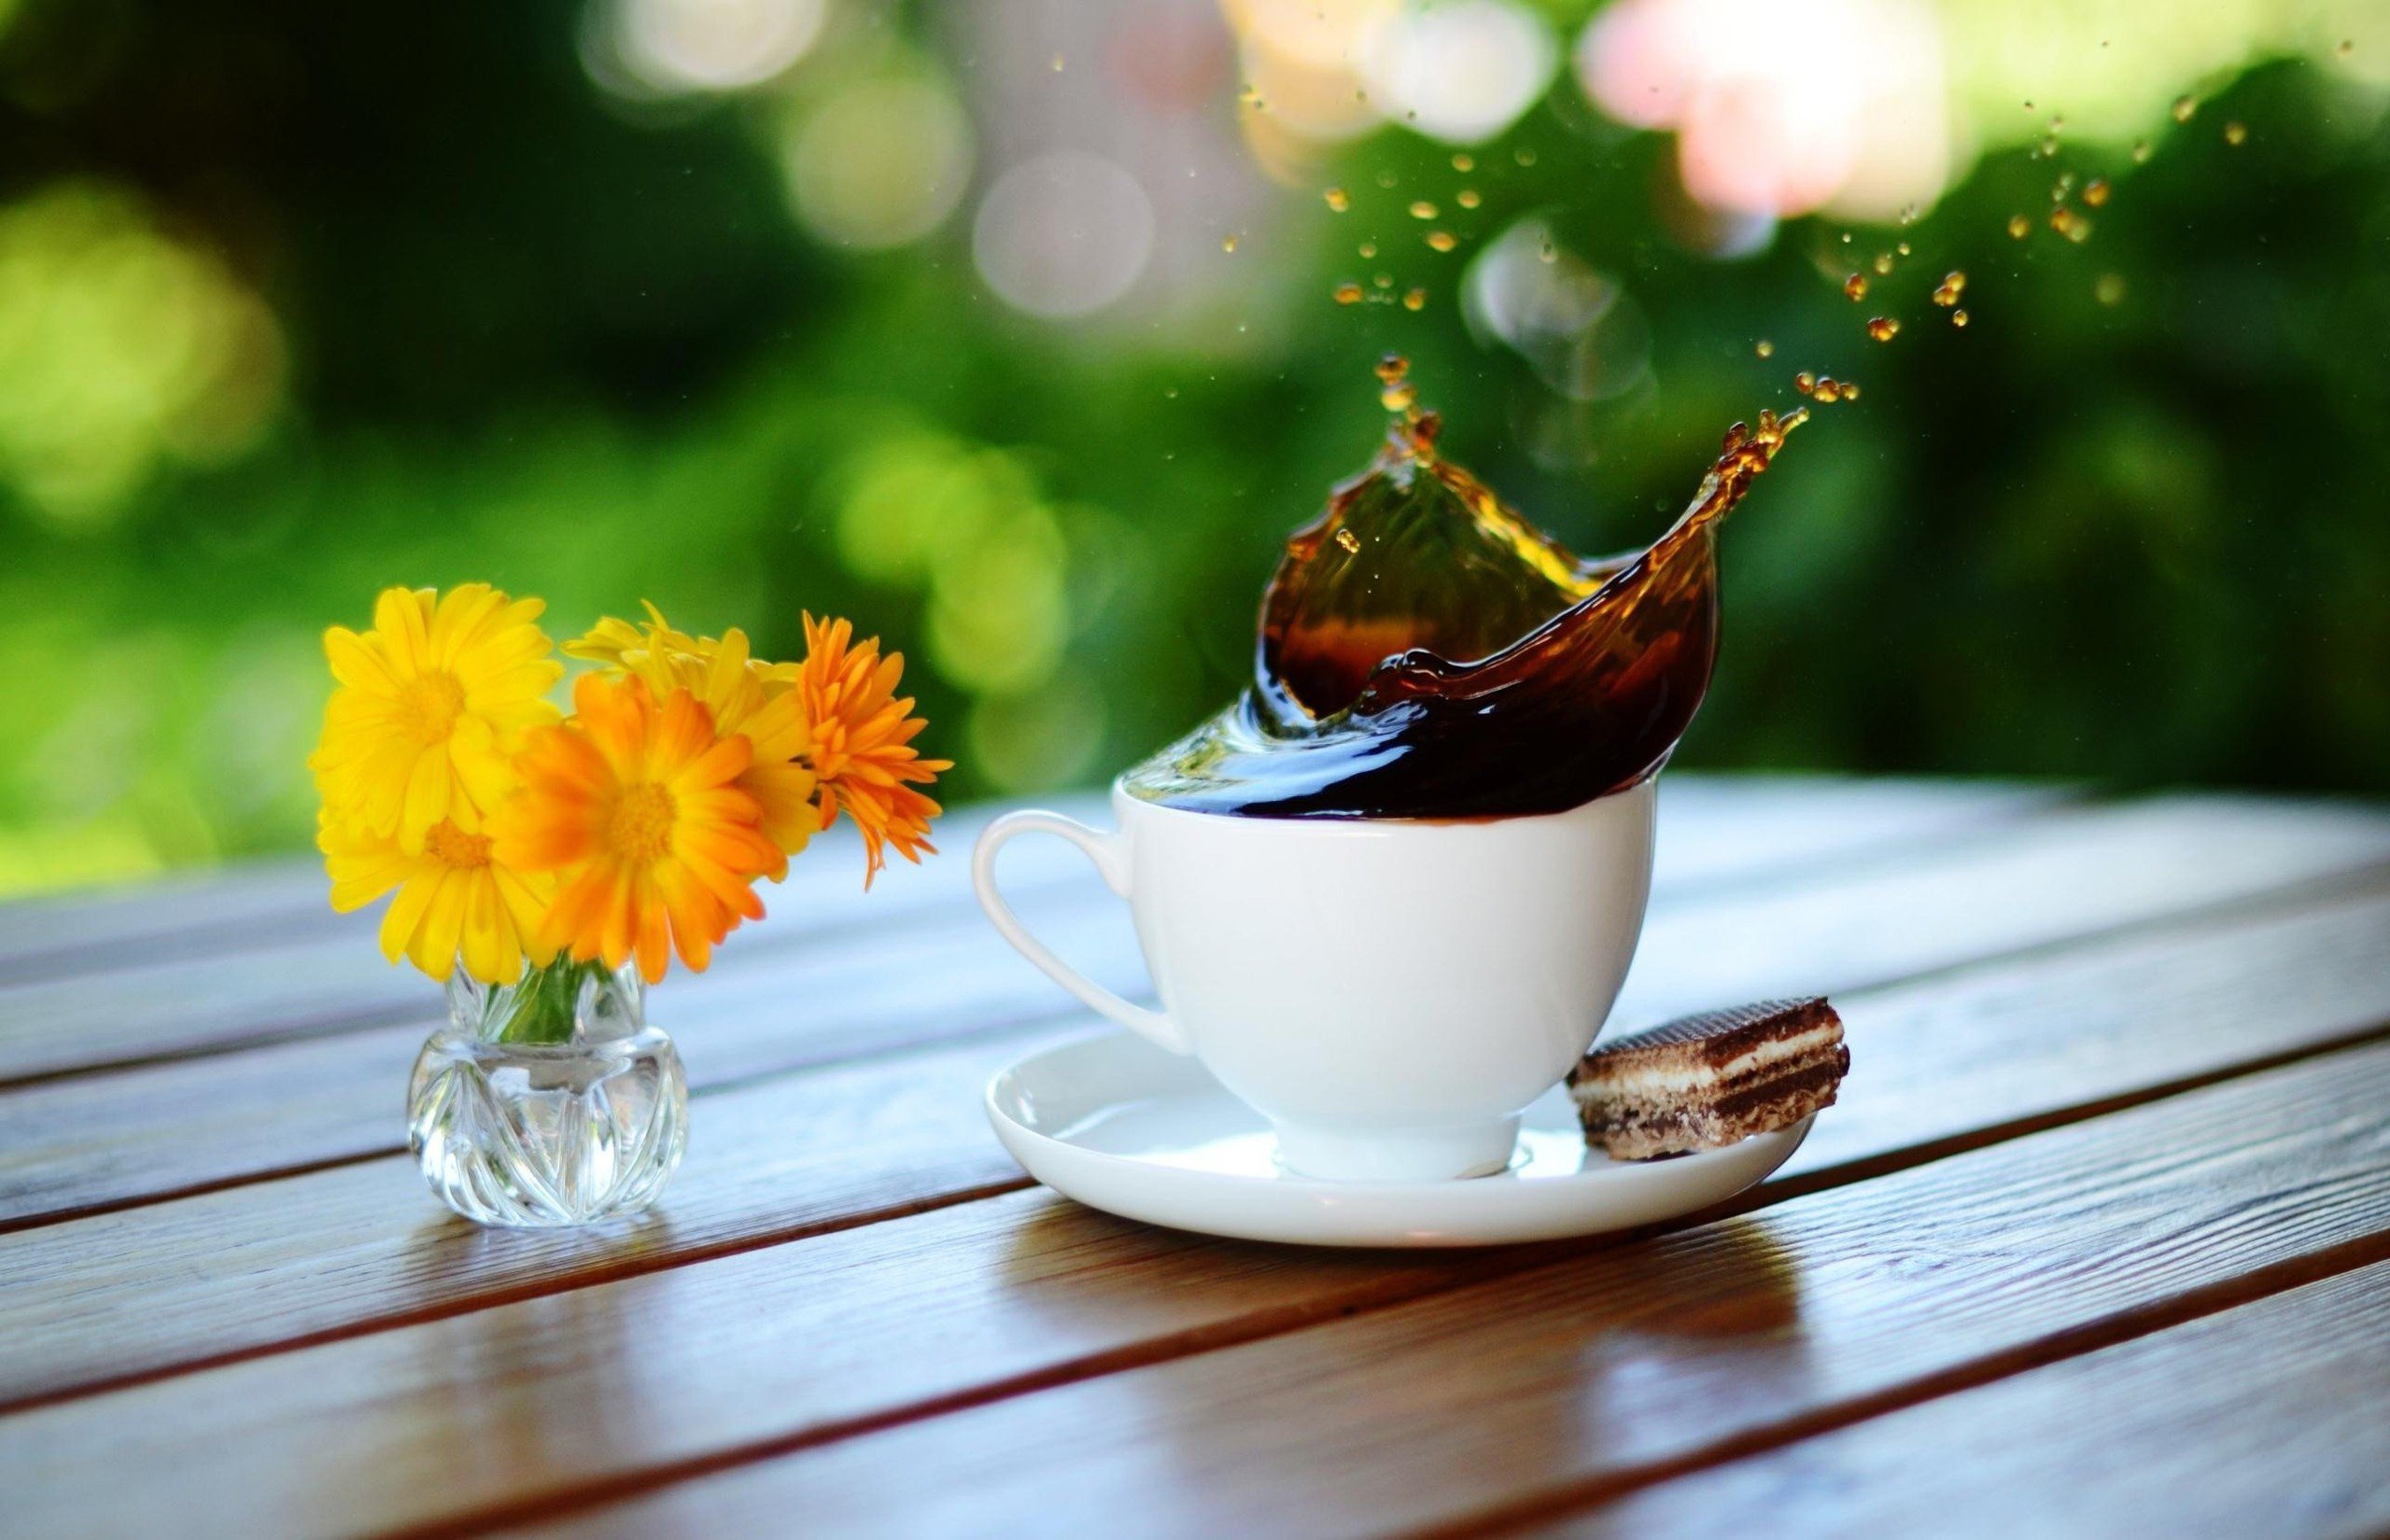 桌上的白杯中溅起一朵咖啡花